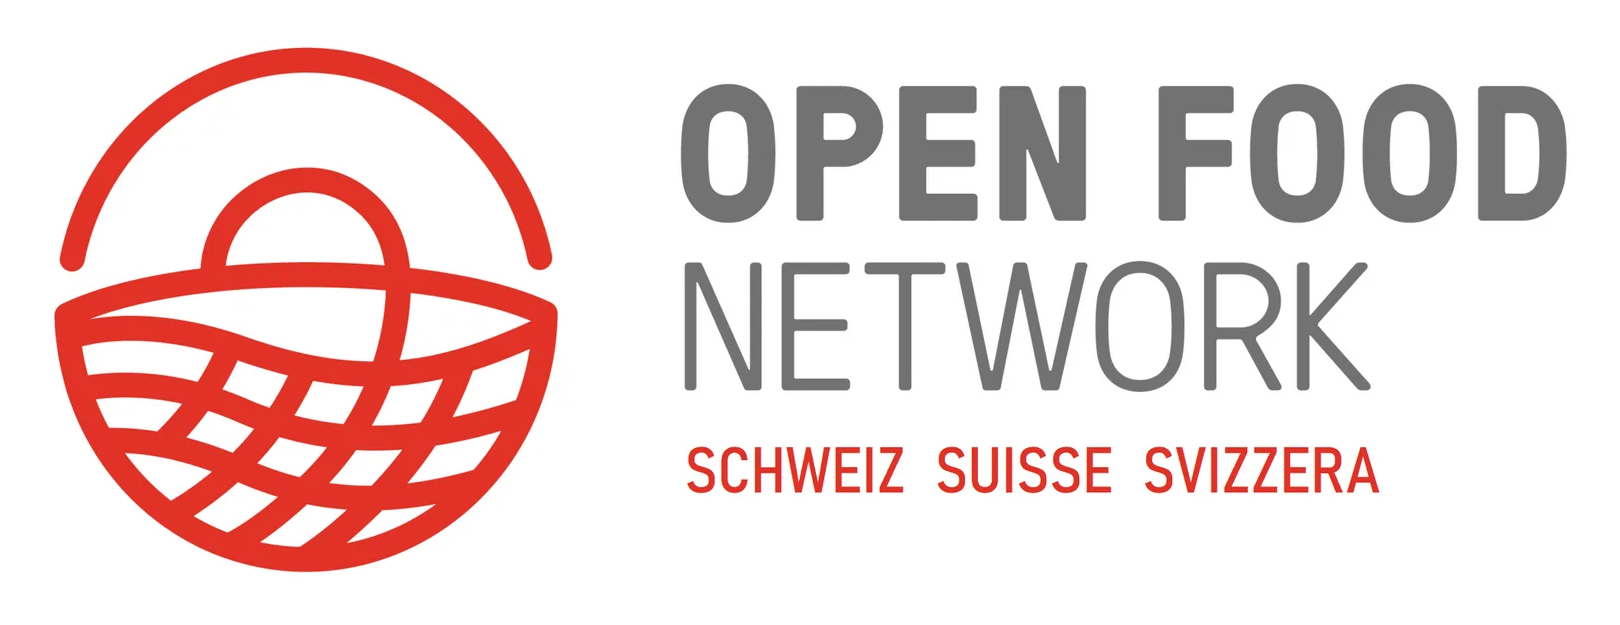 OpenFoodNetwork - Schweiz, Suisse, Svizzera